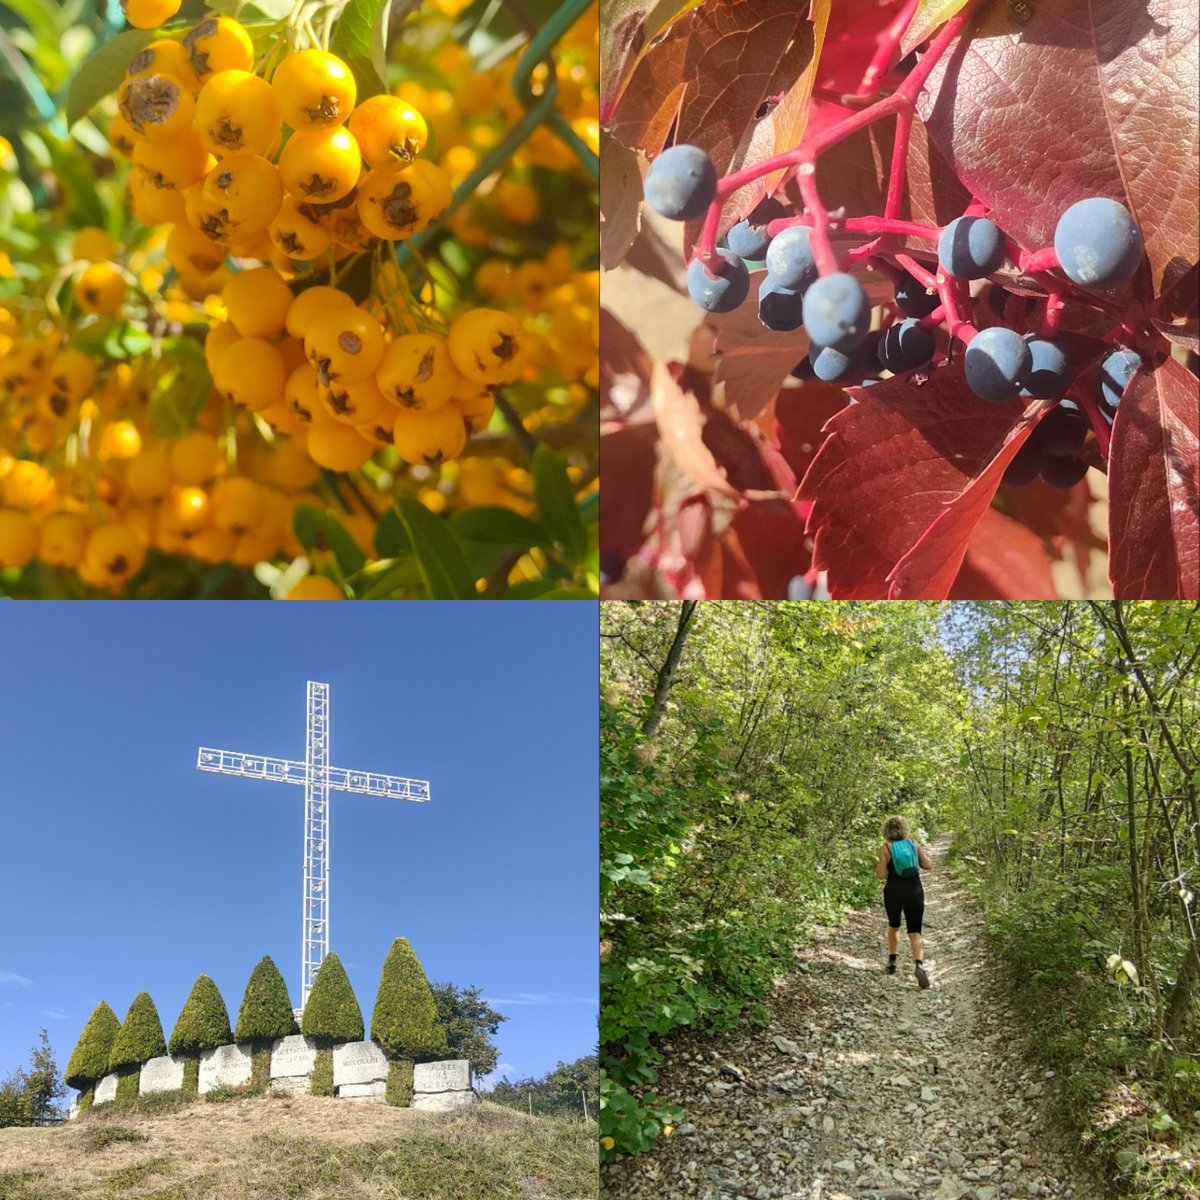 Breve escursione al magnifico borgo di S.Giorgio in Valpolicella con salita al Santuario del monte Solane. L'autunno estivo continua... #8ottobre